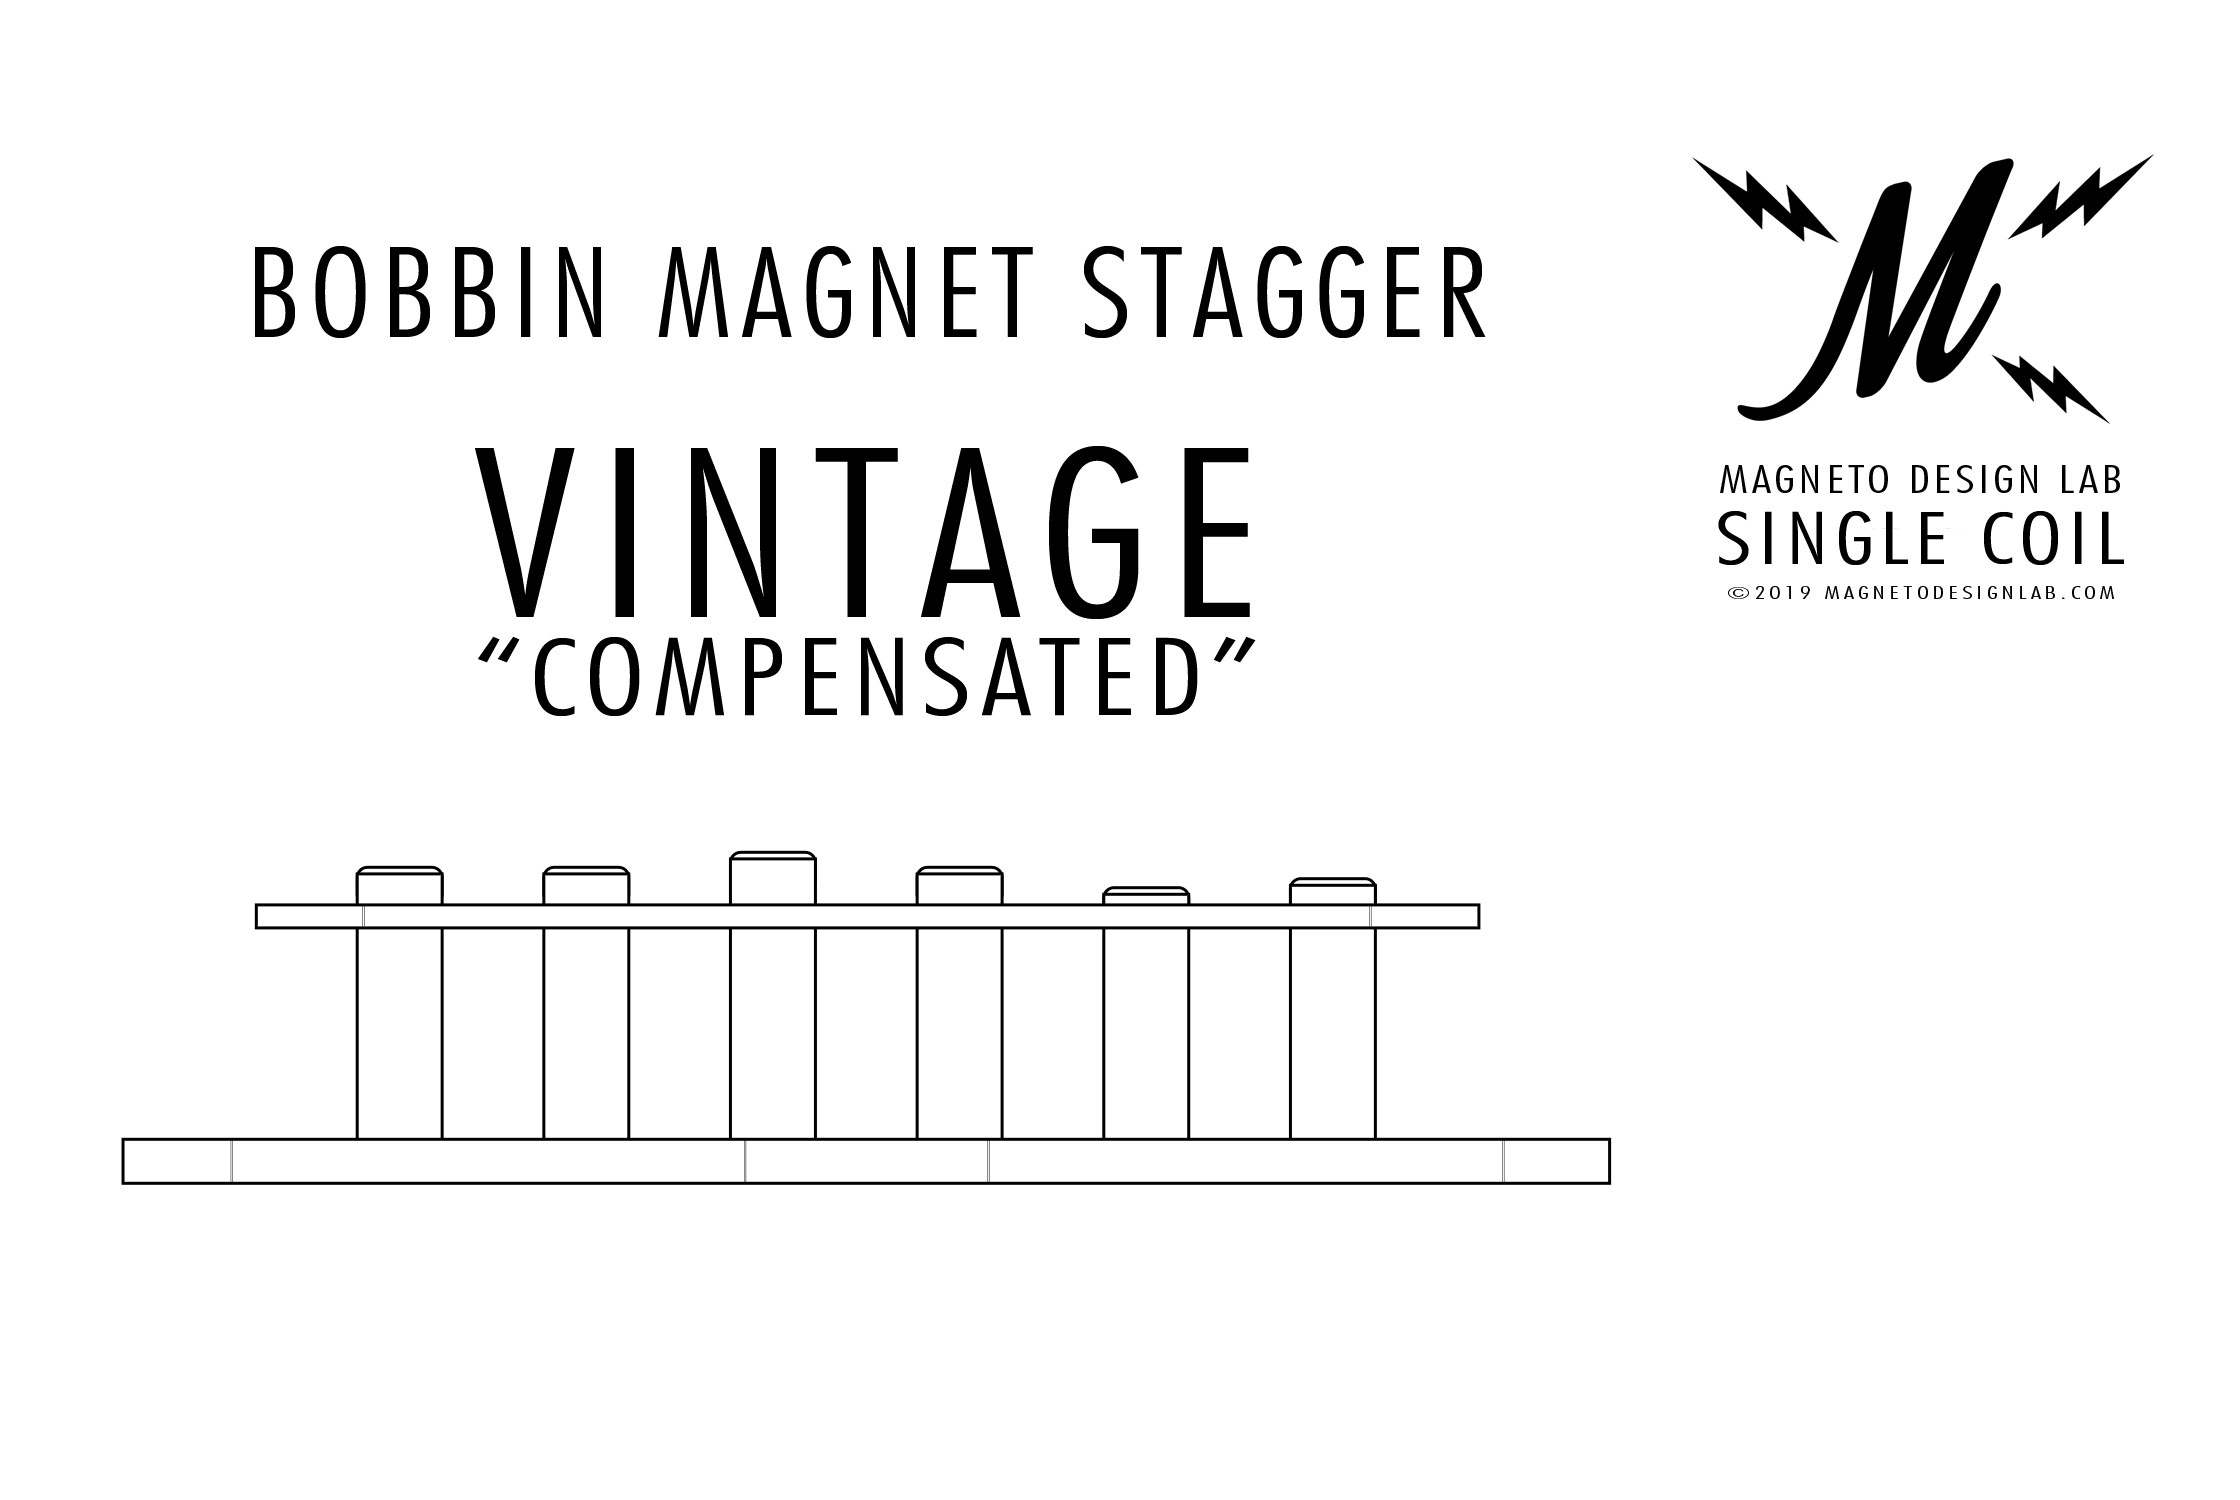 Bobbin-Magnet-Stagger-Vintage-Compensated-Magneto-Design-Lab-Single-Coil-Style-Guitar-Pickup.jpg